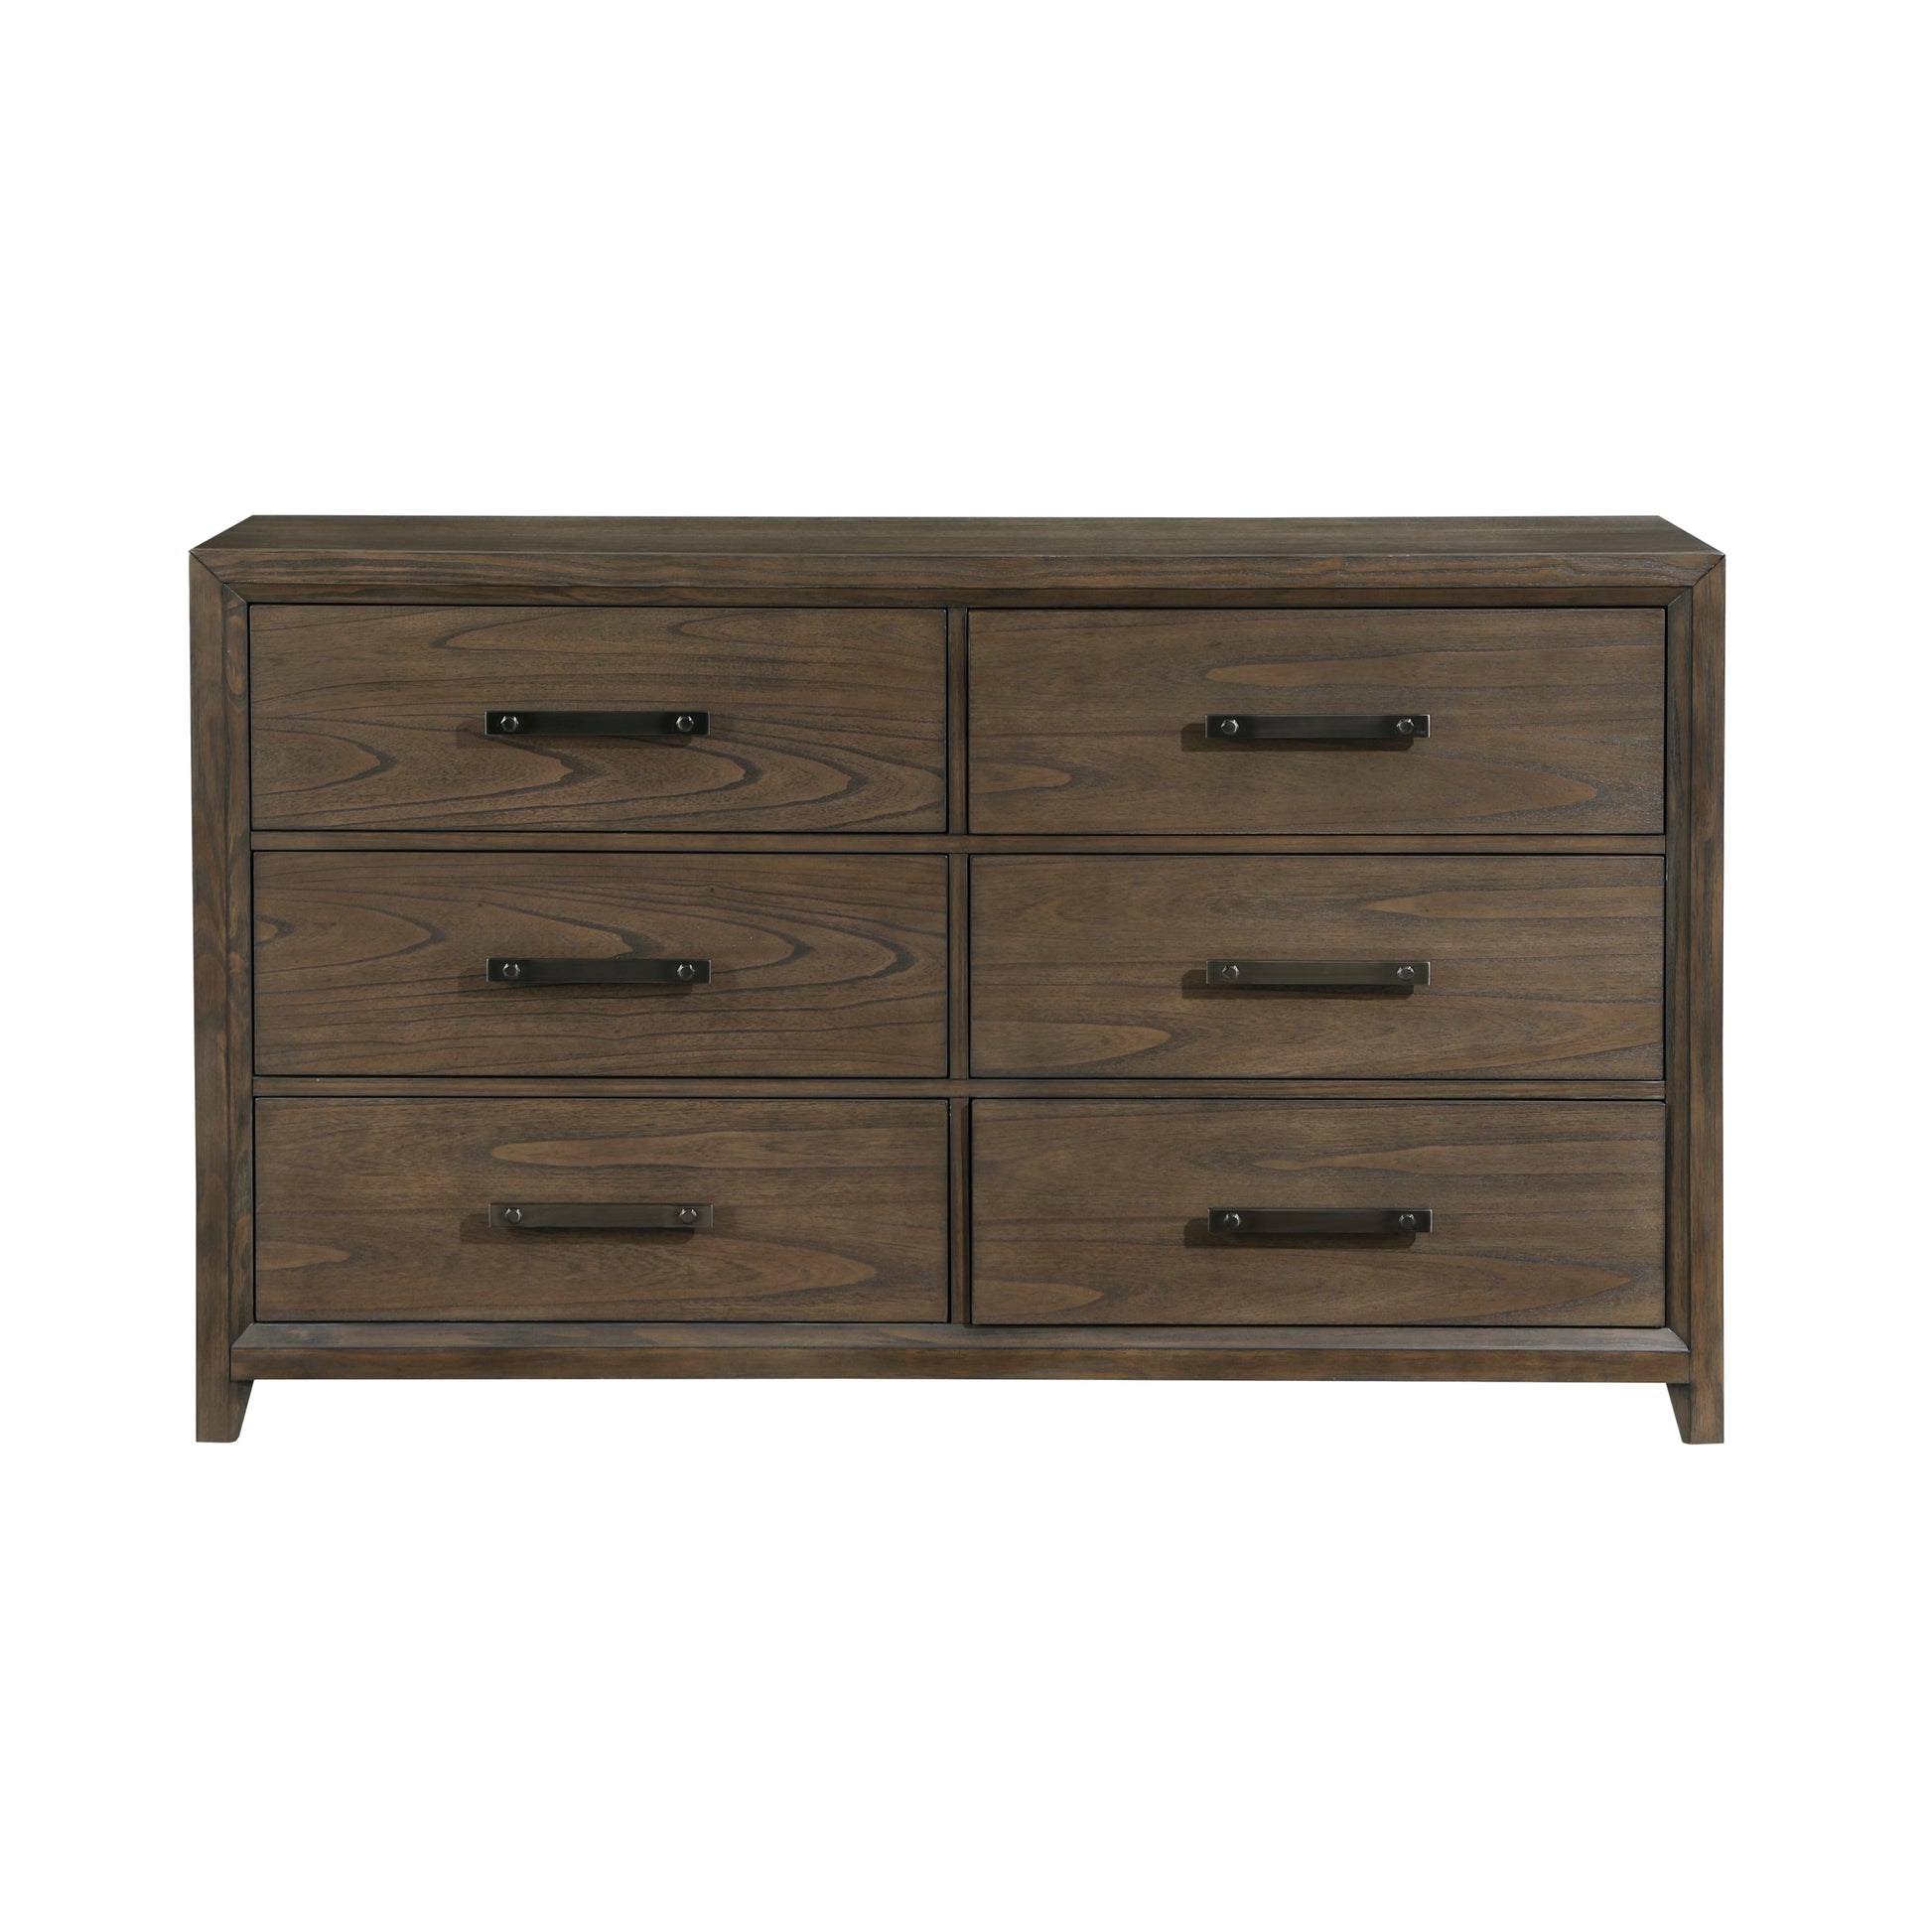 Dark Walnut Finish Dresser of 6 Drawers Classic Design walnut-bedroom-wood